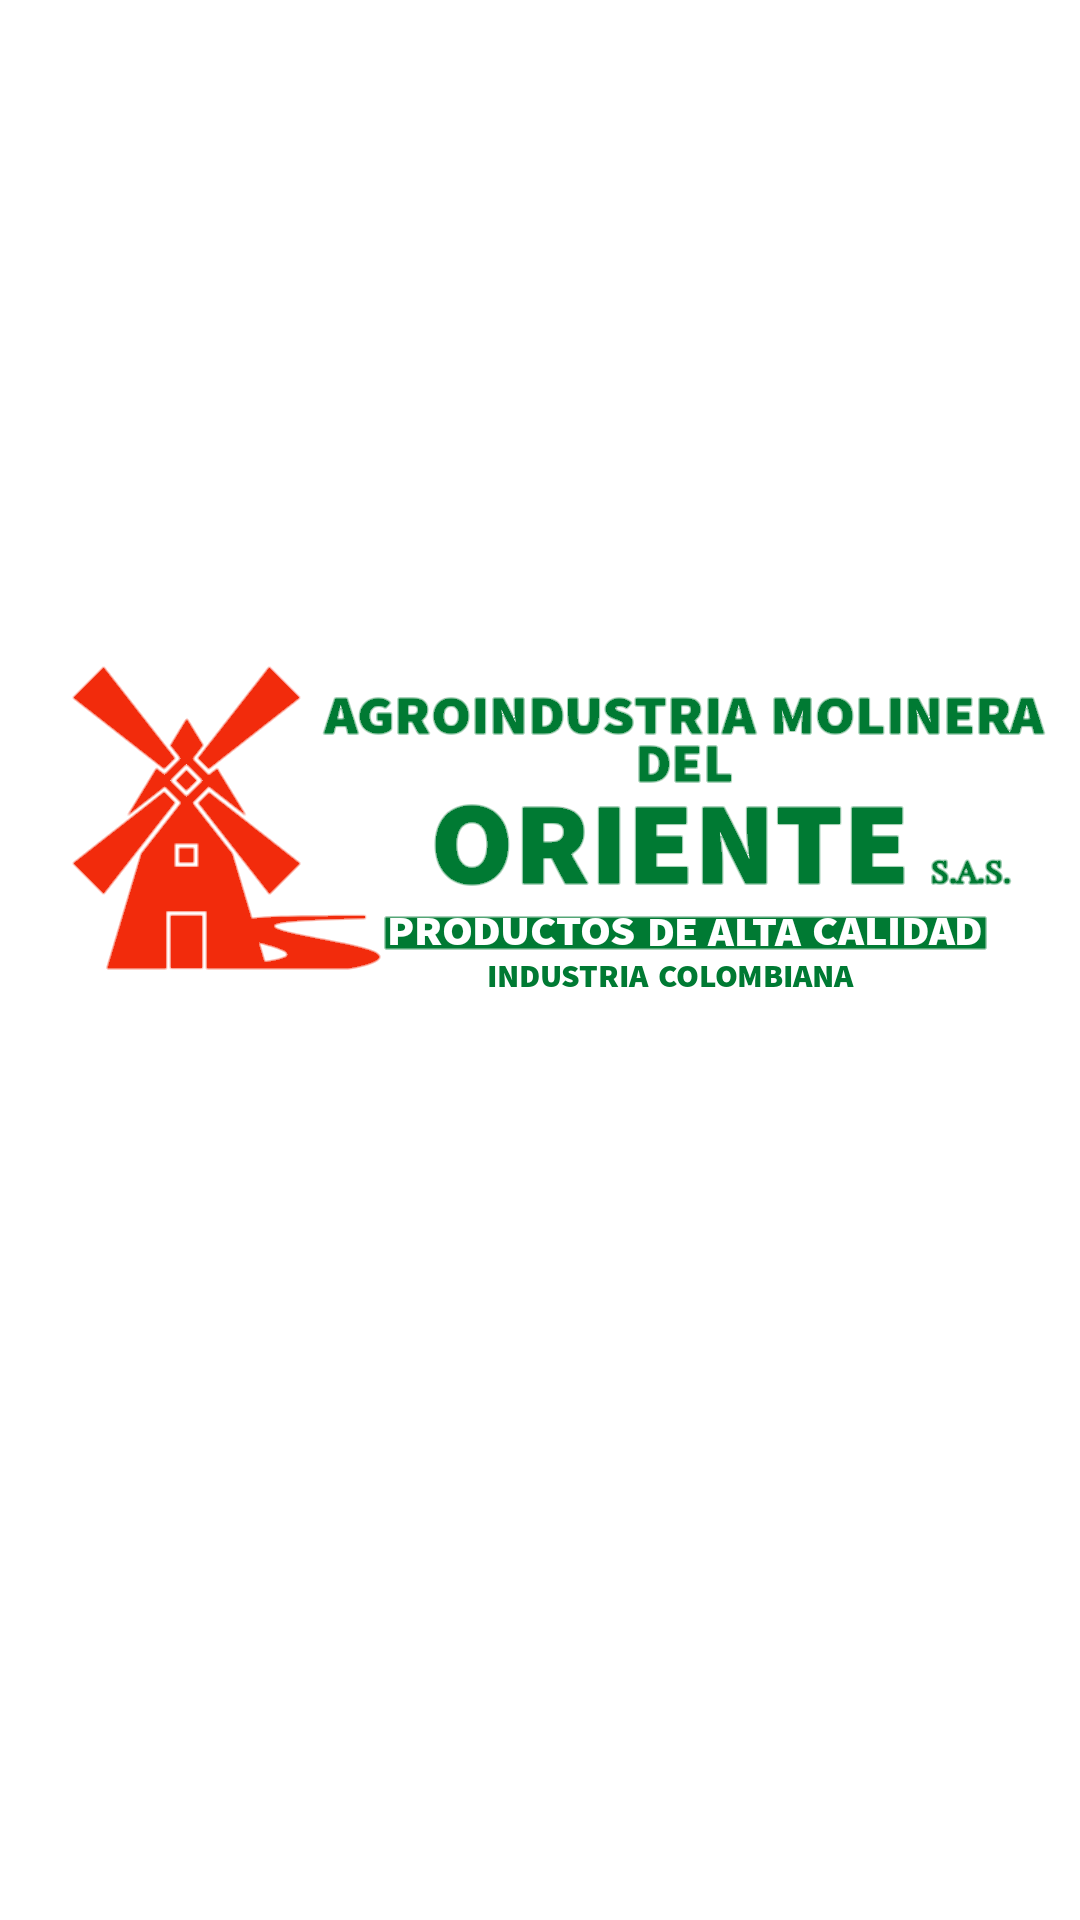 AGROINDUSTRIA MOLINERA DEL ORIENTE S.A.S